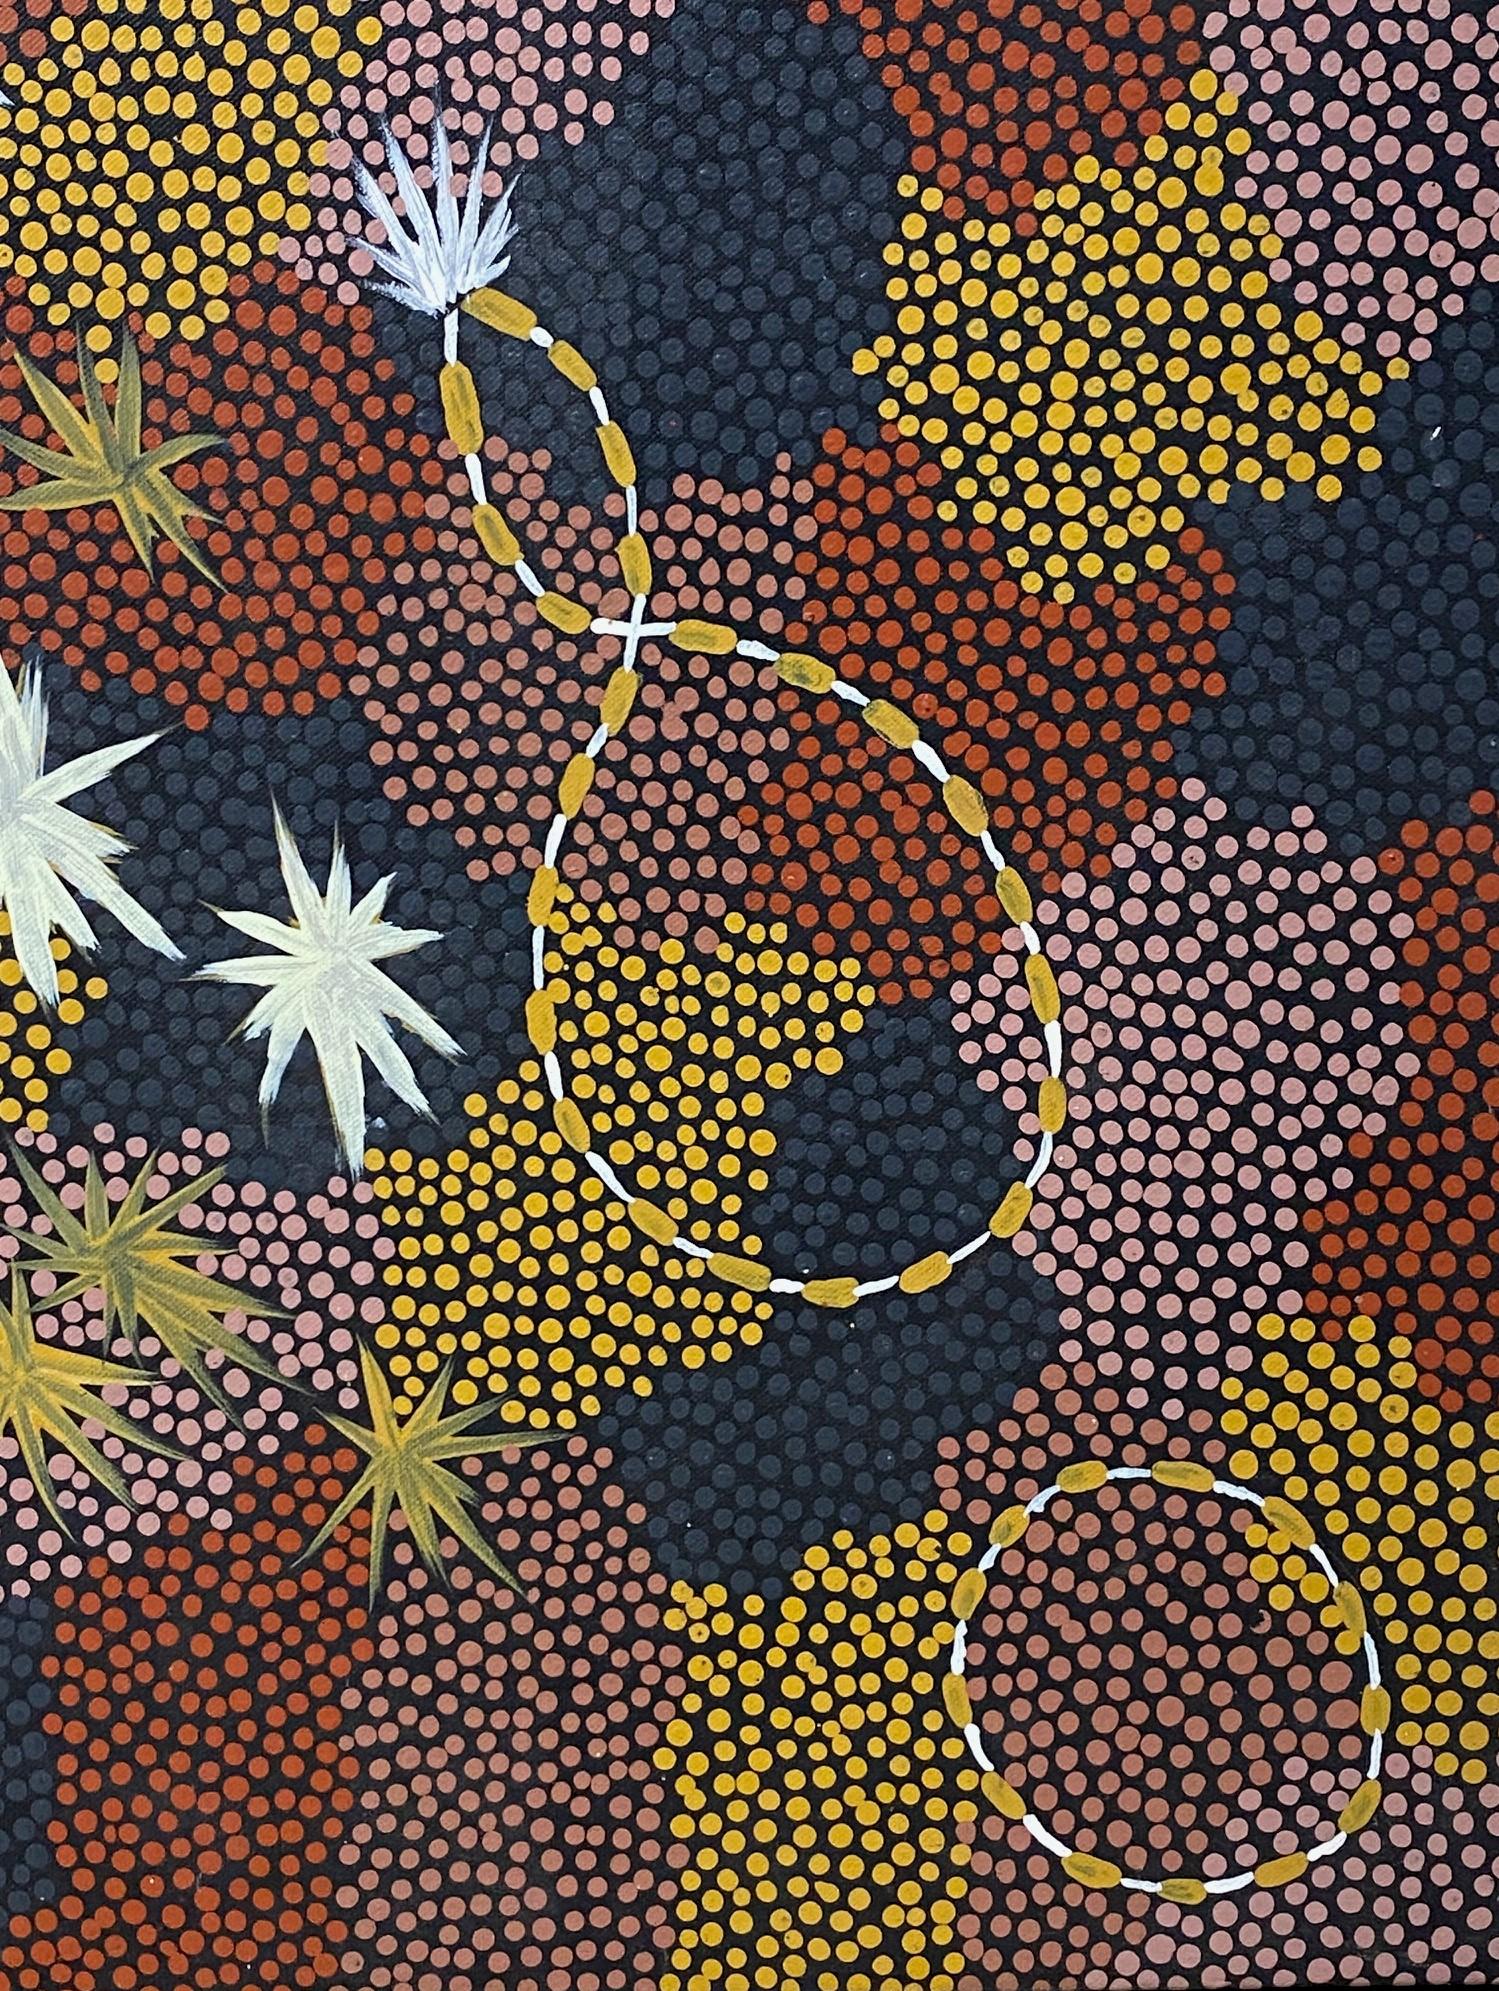 20th Century Clifford Possum Tjapaltjarri Indigenous Aboriginal Art Large Original Painting For Sale